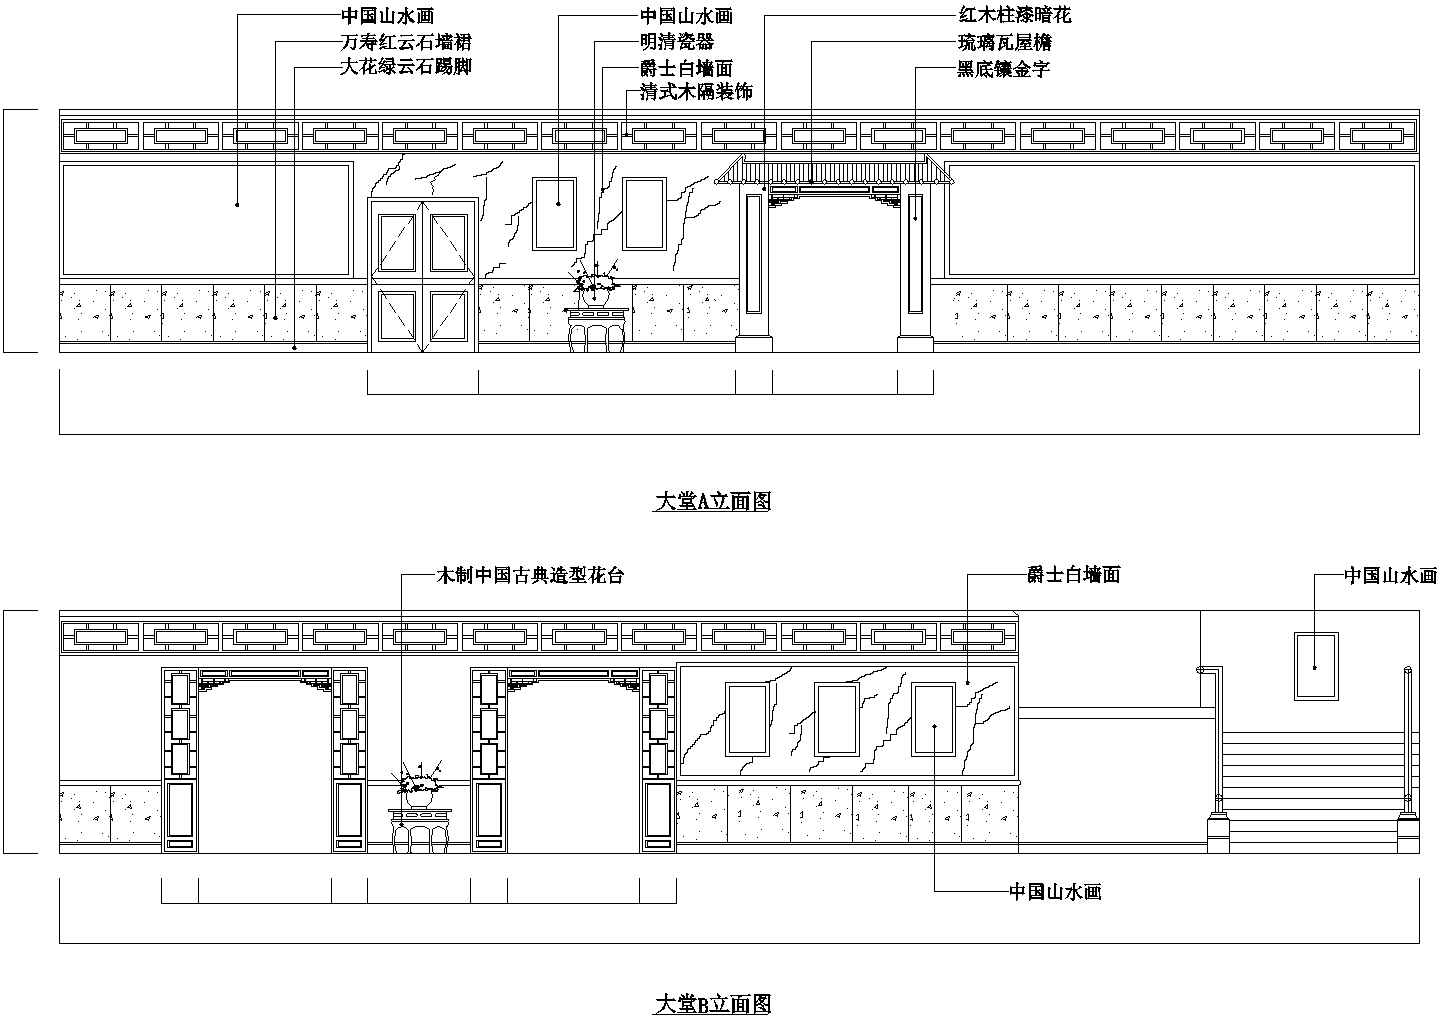 北京市大兴区某连锁酒店中餐厅全套装修设计CAD图纸